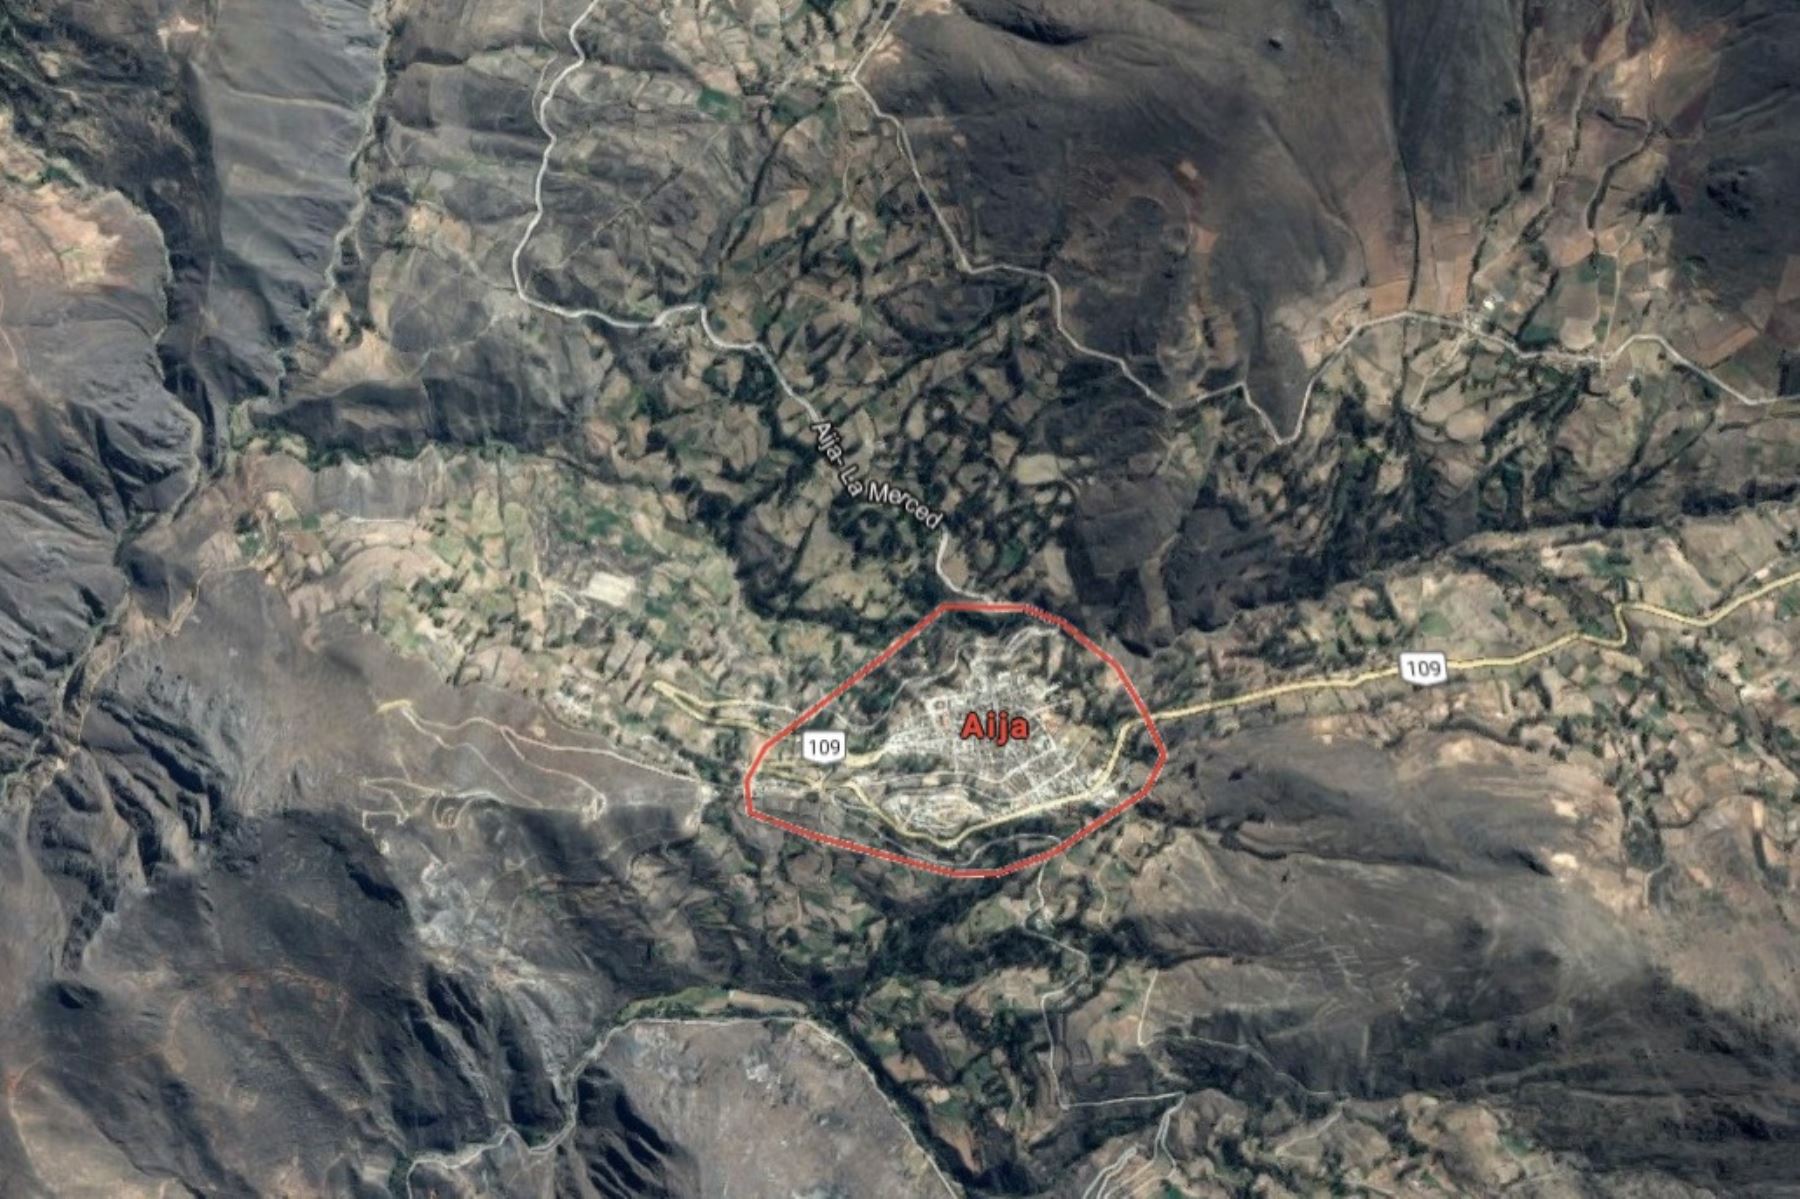 Sismo de magnitud 5.2 alarmó esta mañana la sierra de Áncash. El epicentro se ubicó cerca de la localidad de Aija. Foto: Google